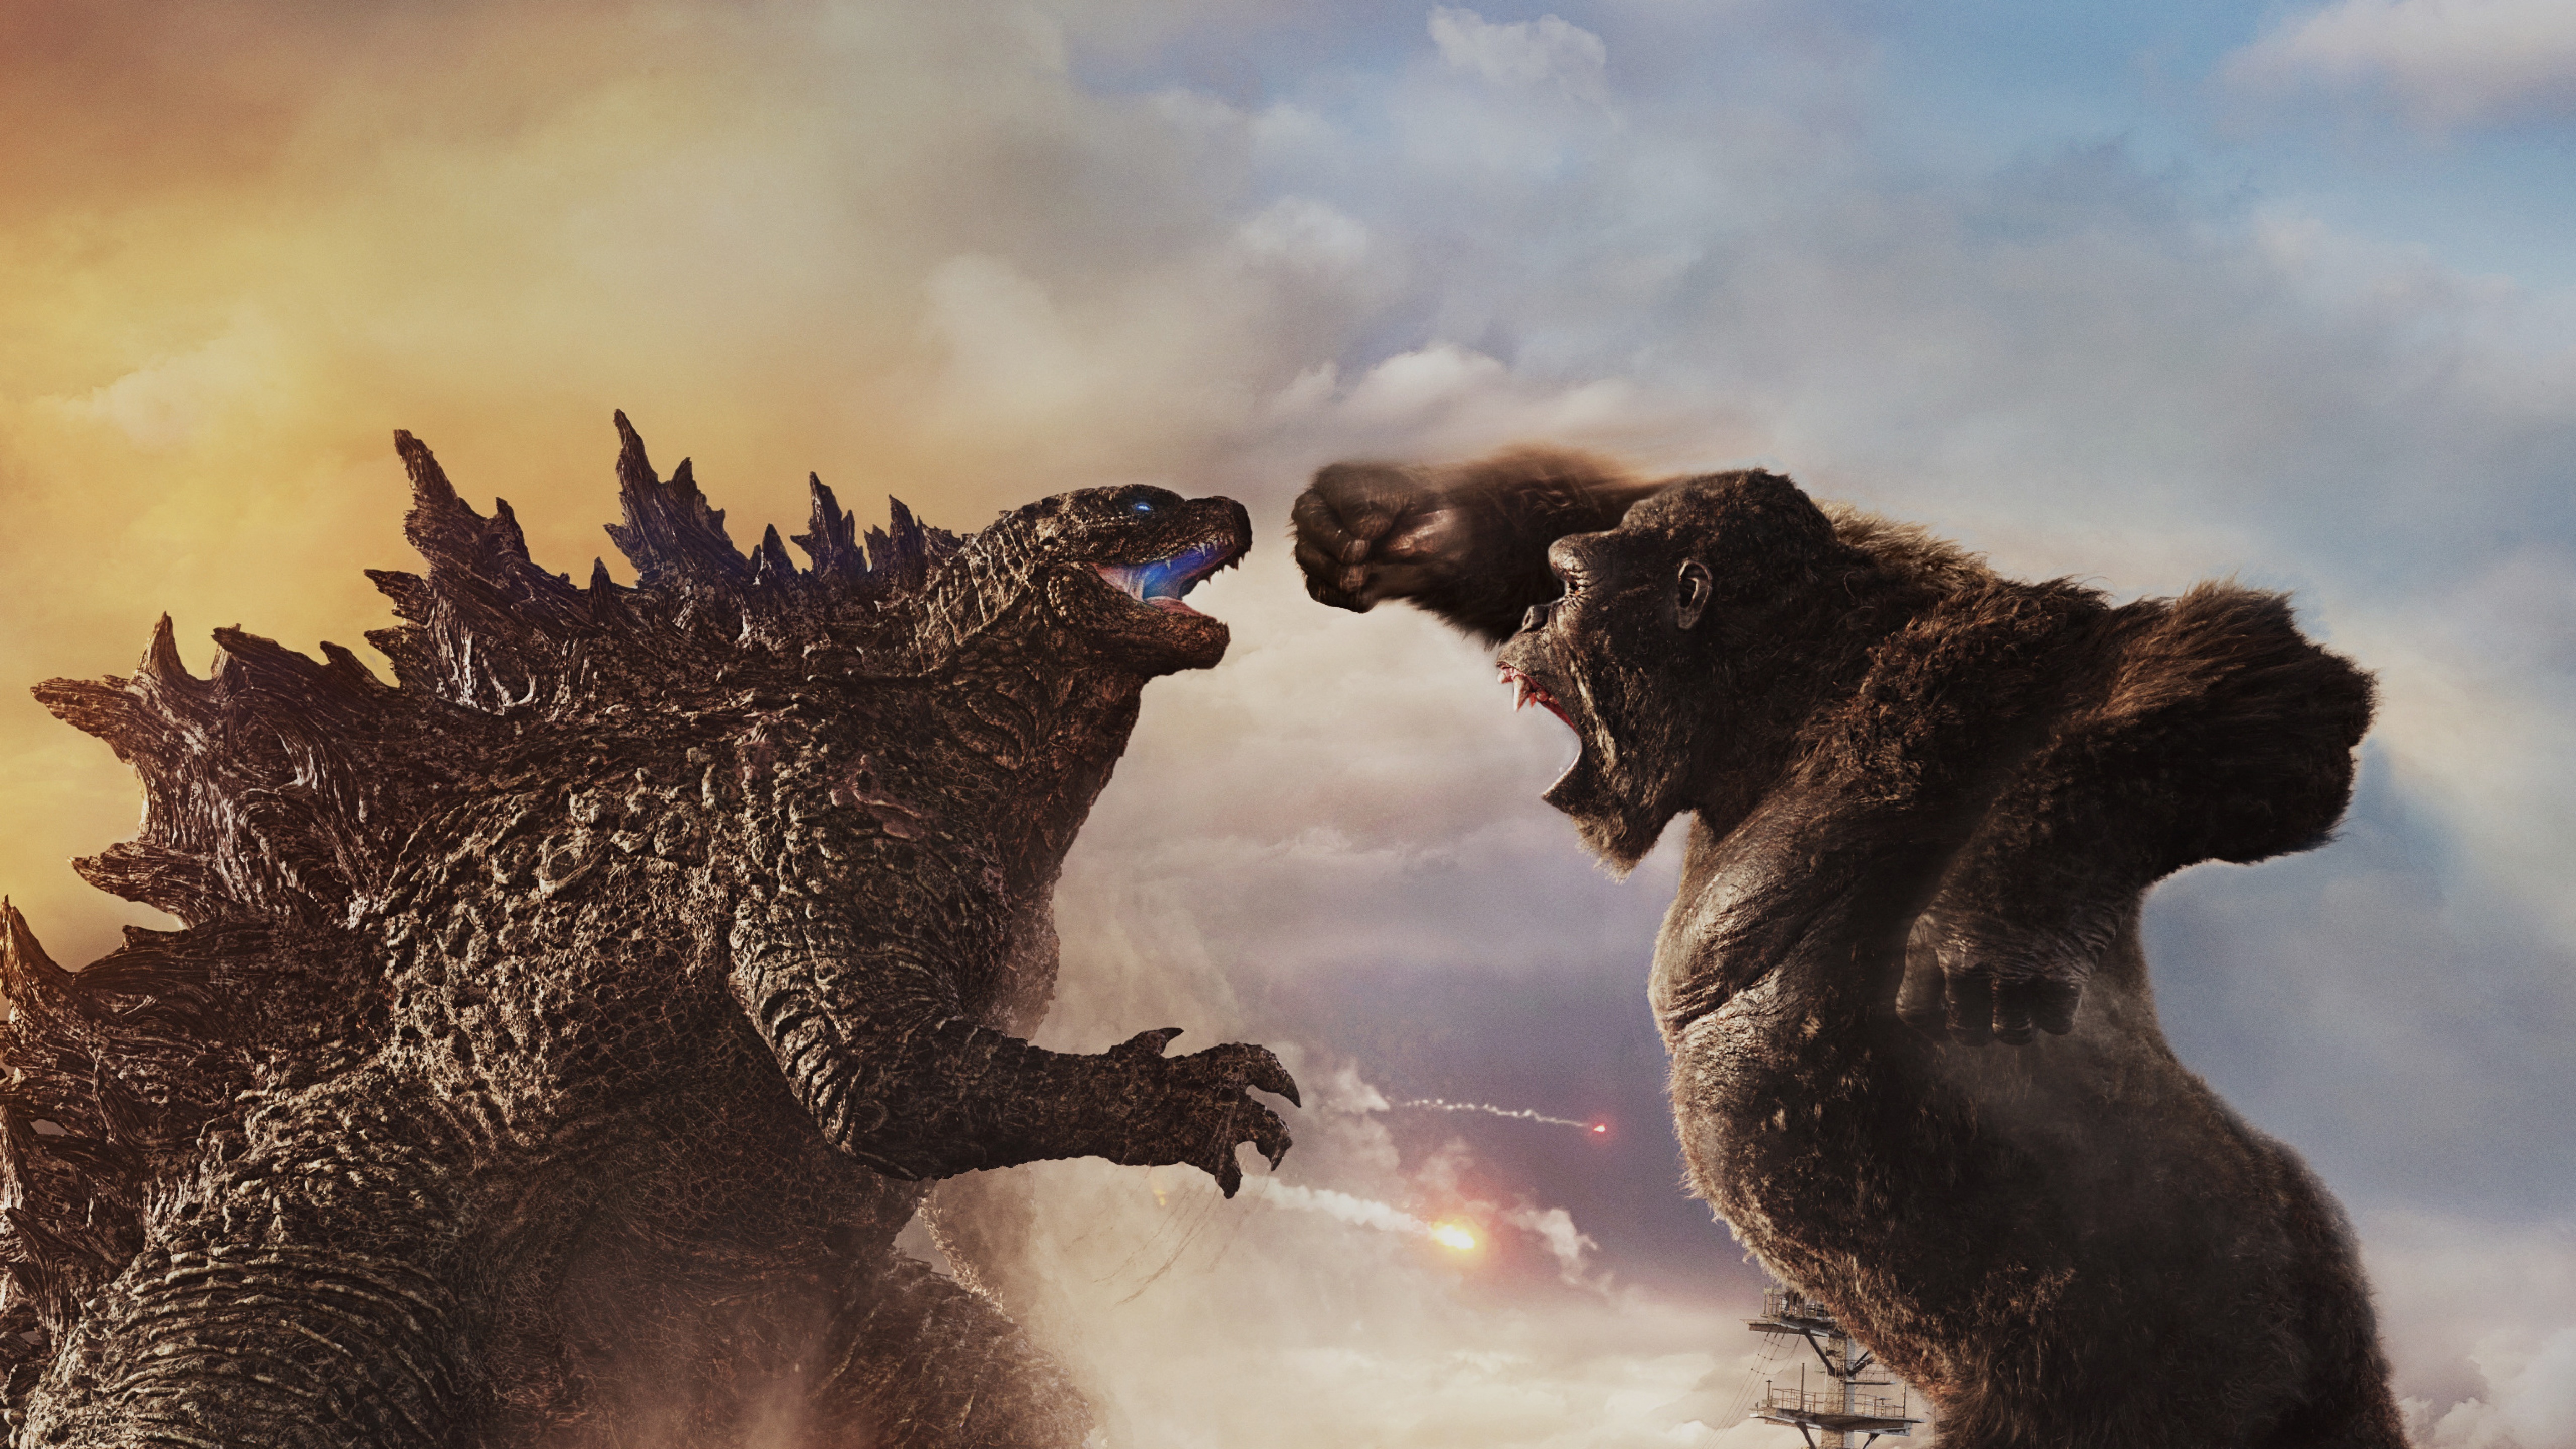 Godzilla vs Kong Wallpaper 4K, 2021 Movies, Movies, #4695